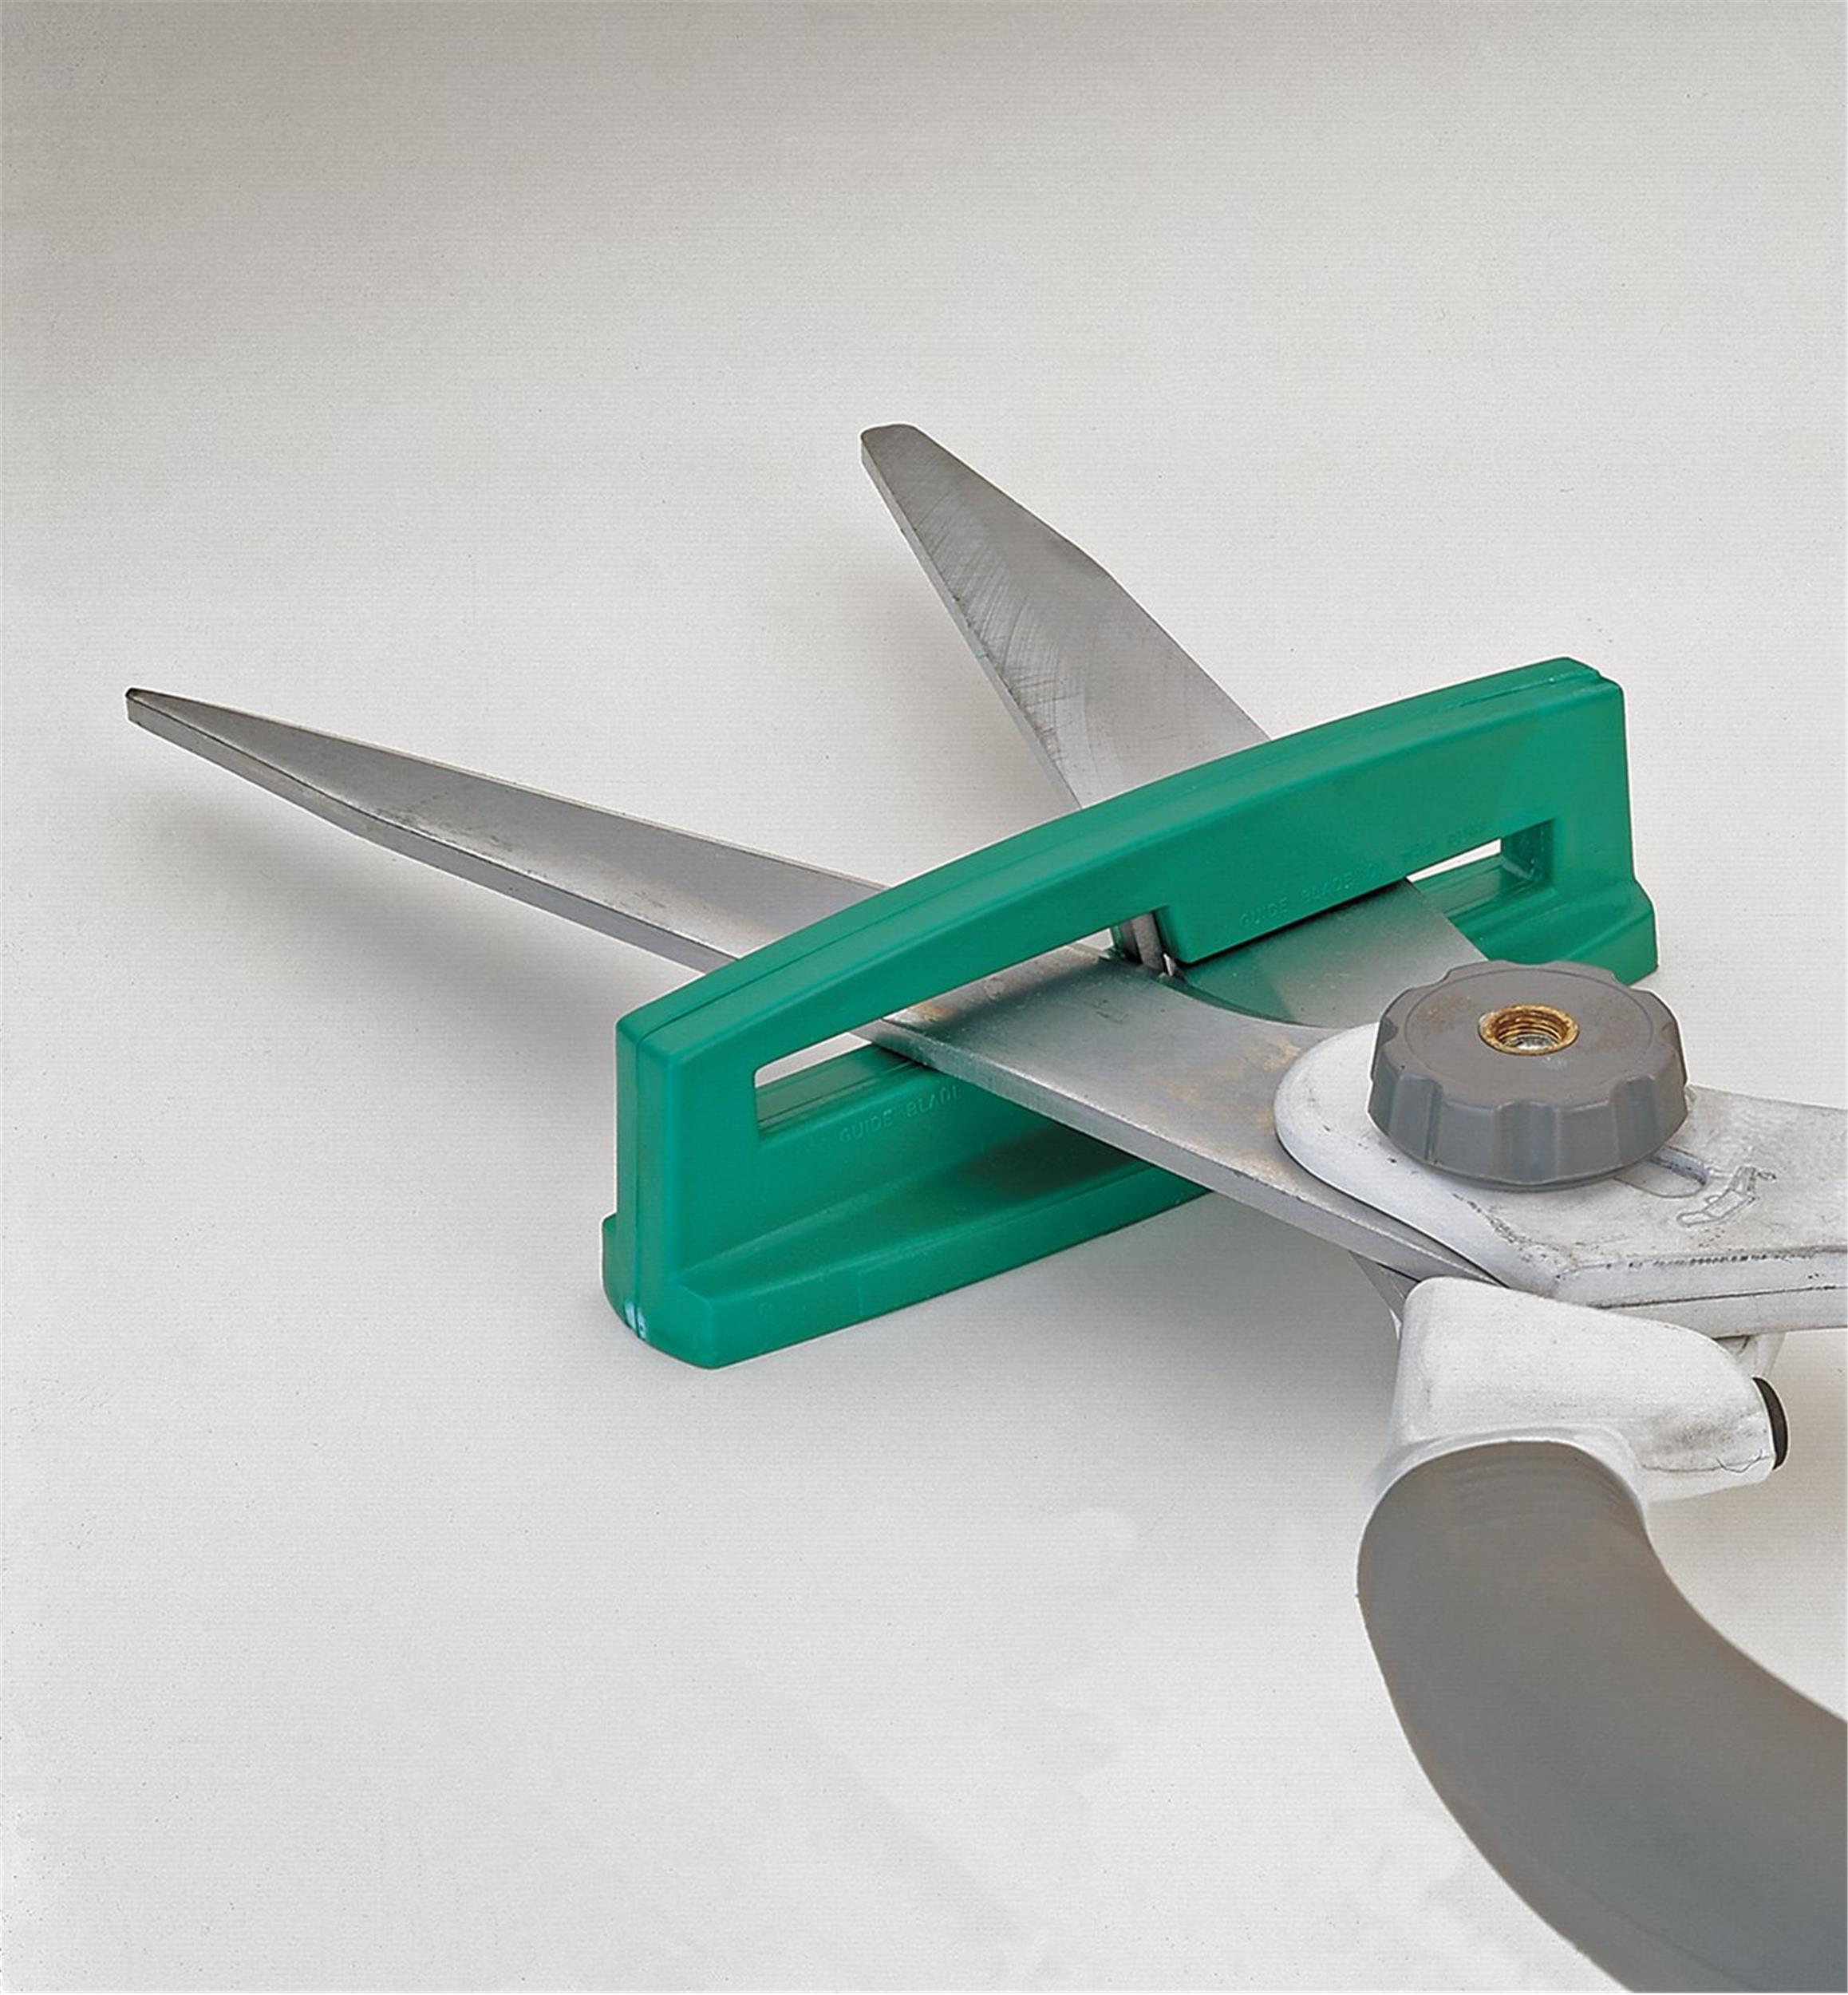 Sharpener Knife & Scissors Sharpener Made in America – MadeinUSAForever